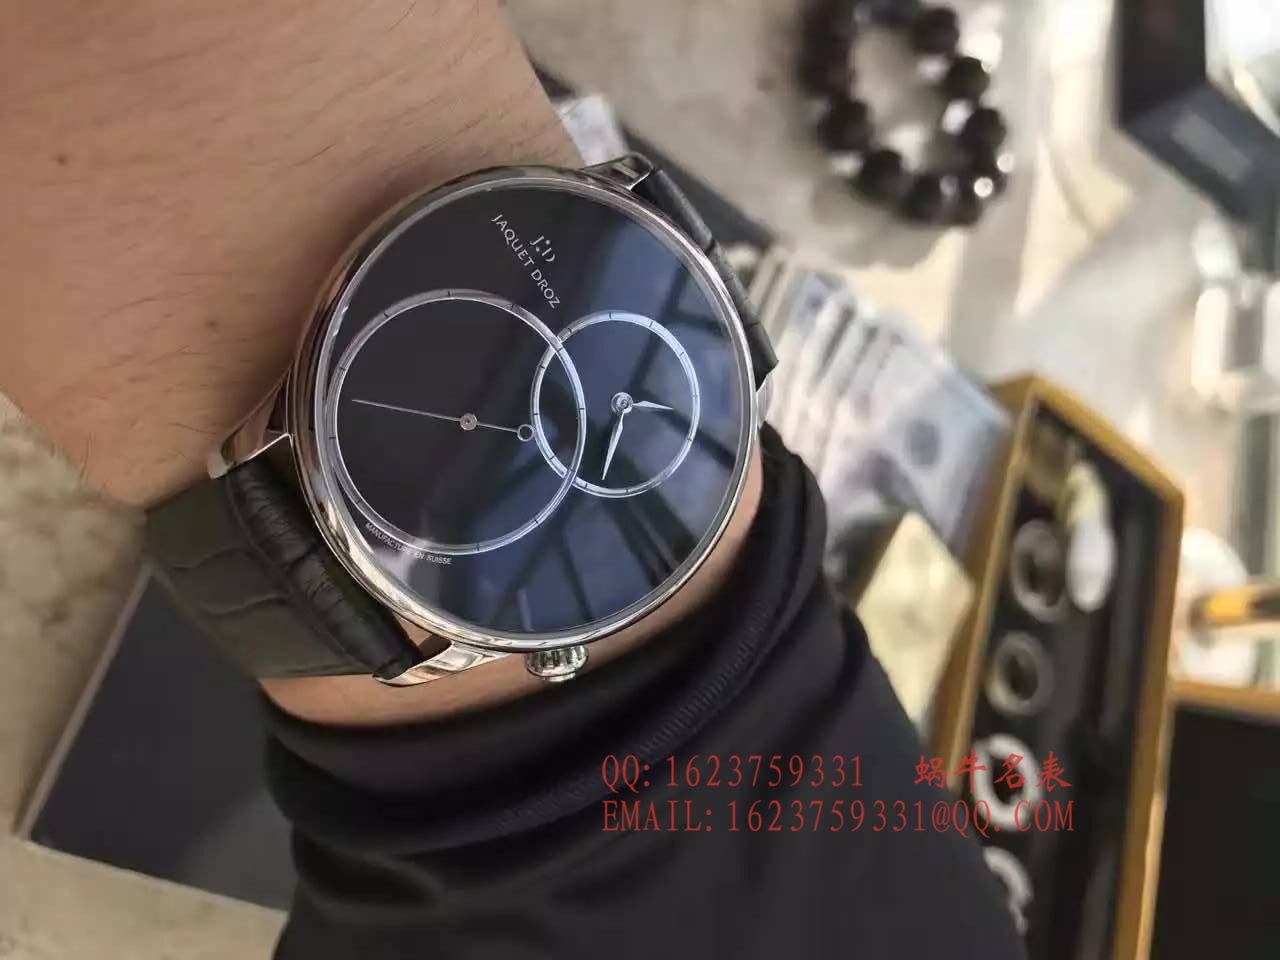 【实拍图鉴赏】KS厂1:1超A精仿手表之雅克德罗大秒针系列J006030270手表 